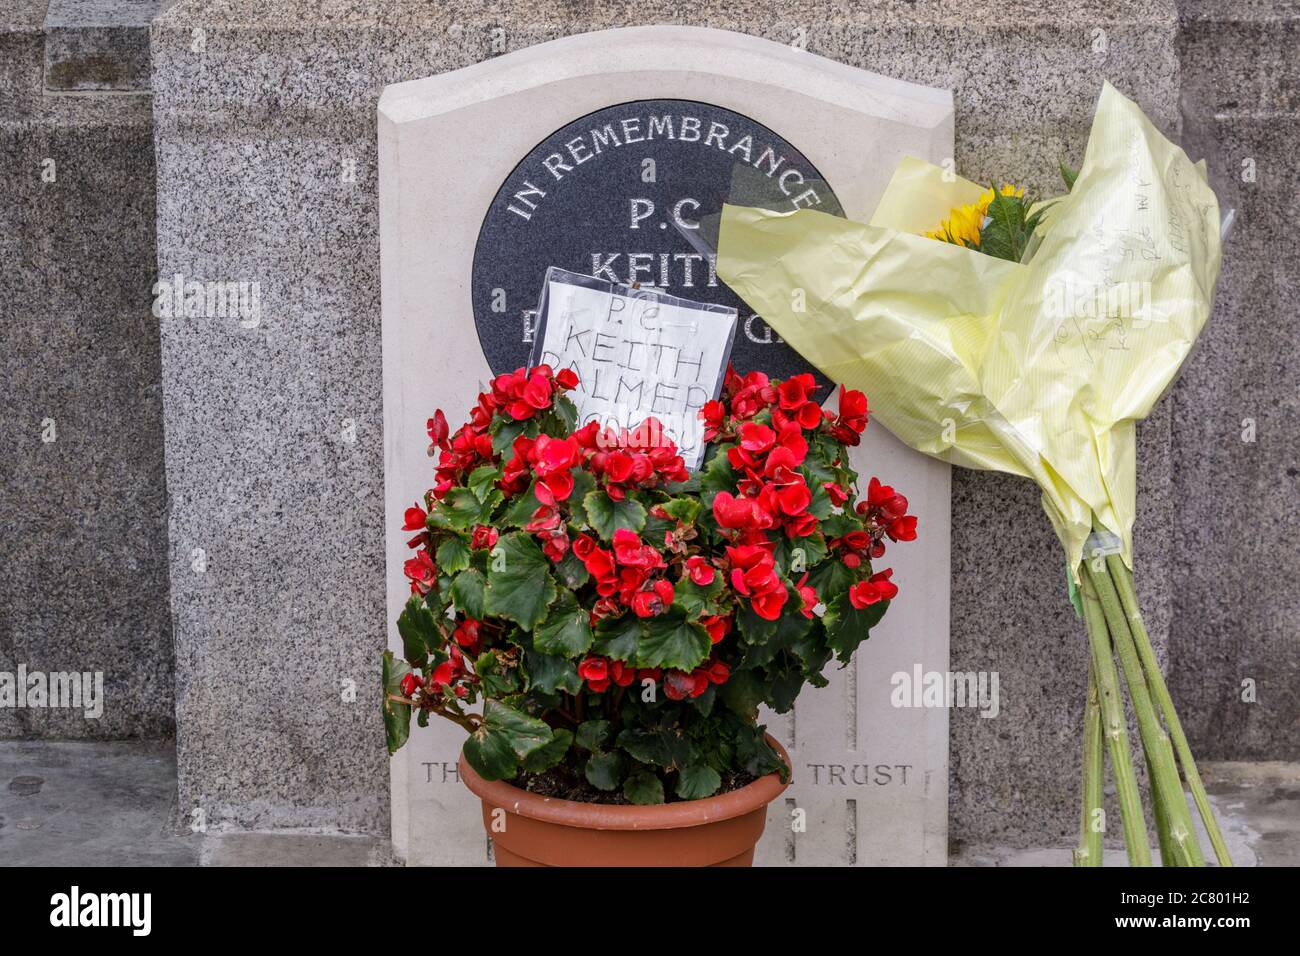 Fleurs déposées à la pierre commémorative du souvenir à l'extérieur de la Chambre des communes pour le PC Keith Palmer, Parlement, Westminster, Londres Banque D'Images